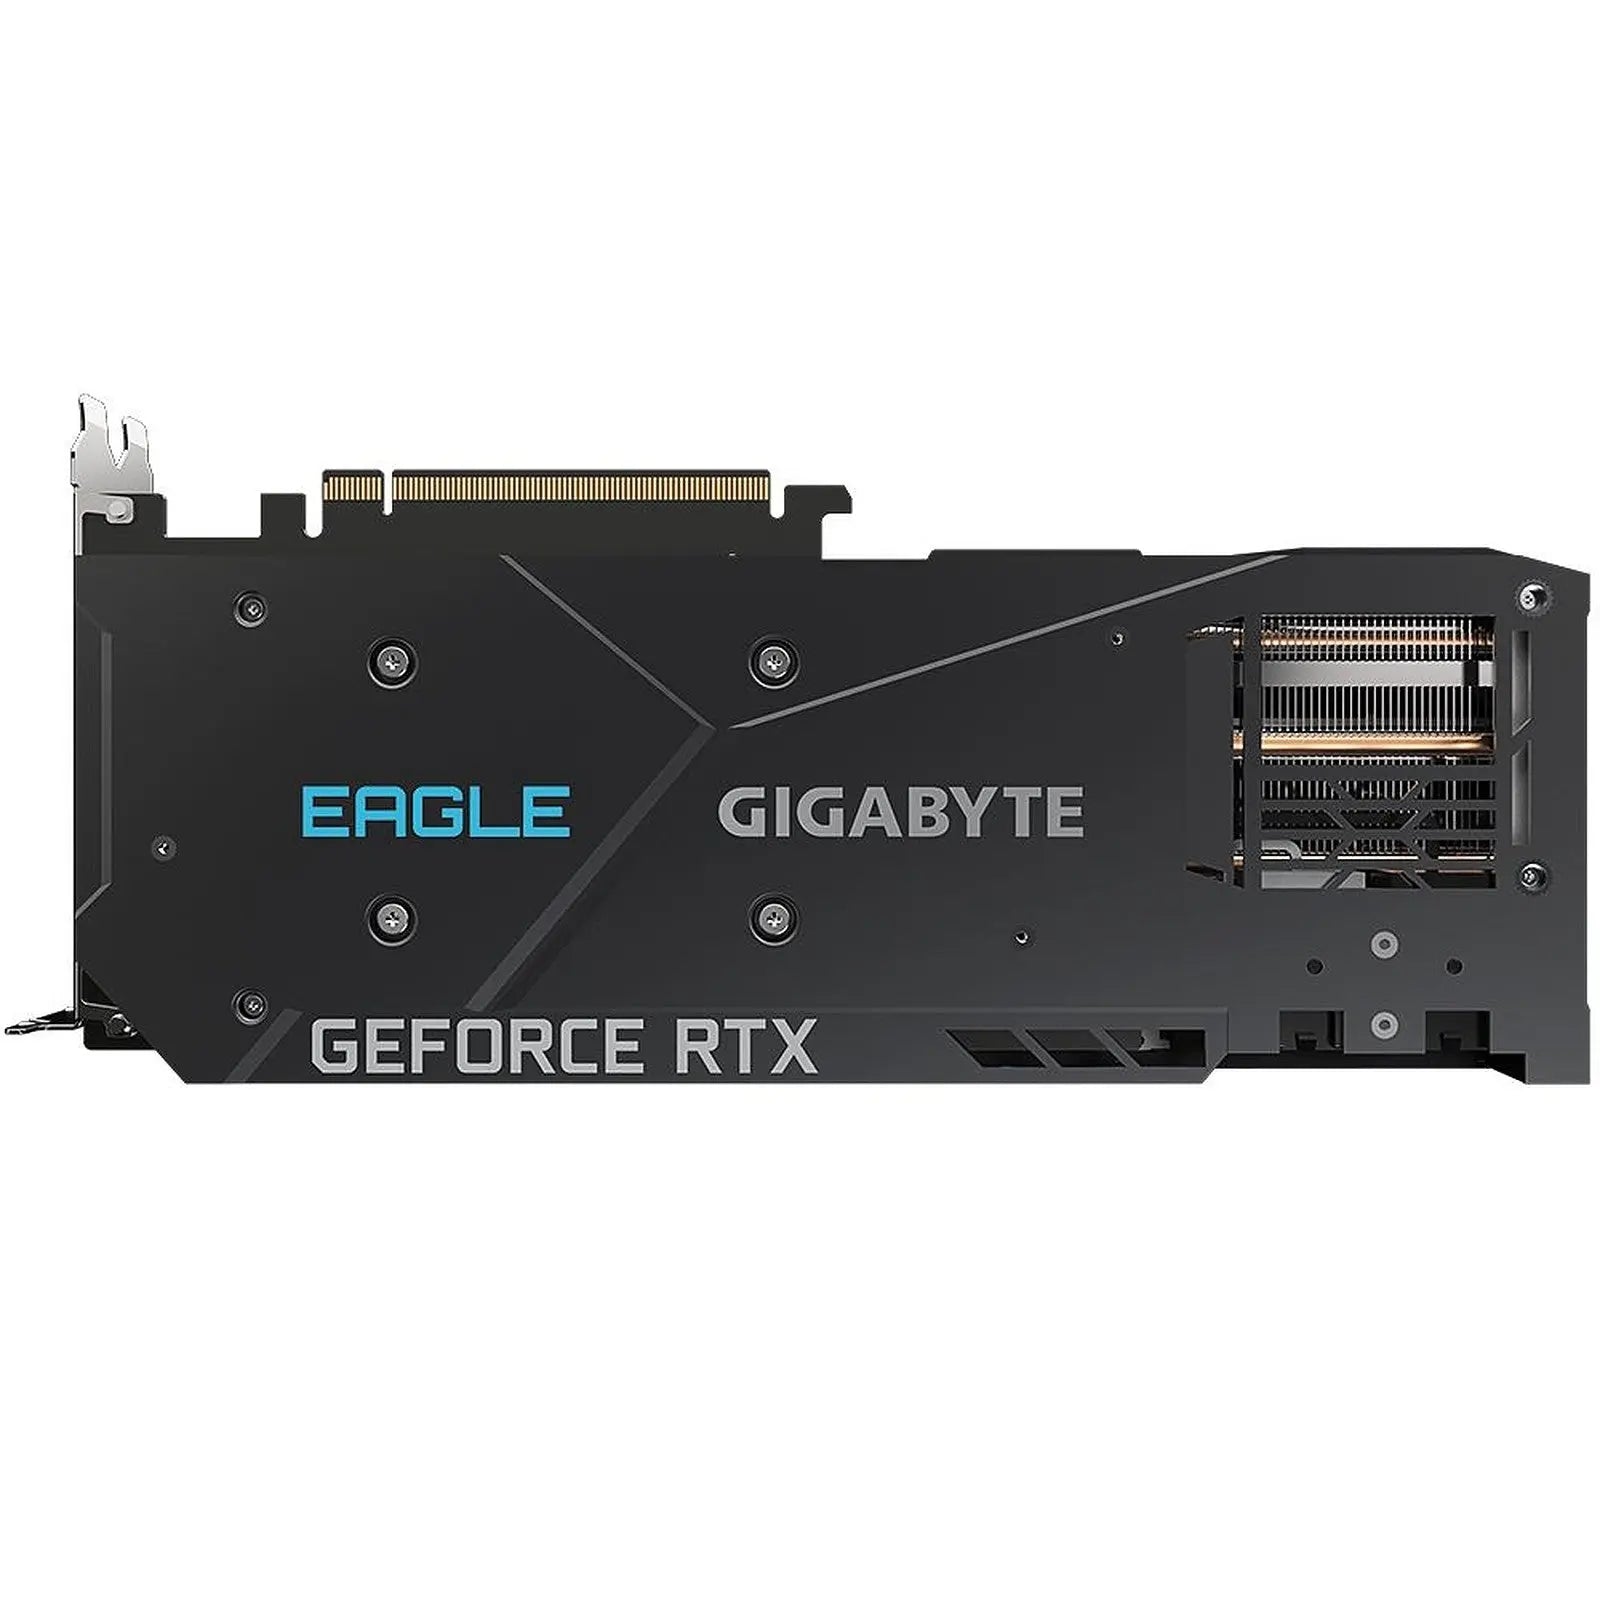 Gigabyte GeForce RTX 3070 EAGLE OC 8G 4719331307677 Gigabyte